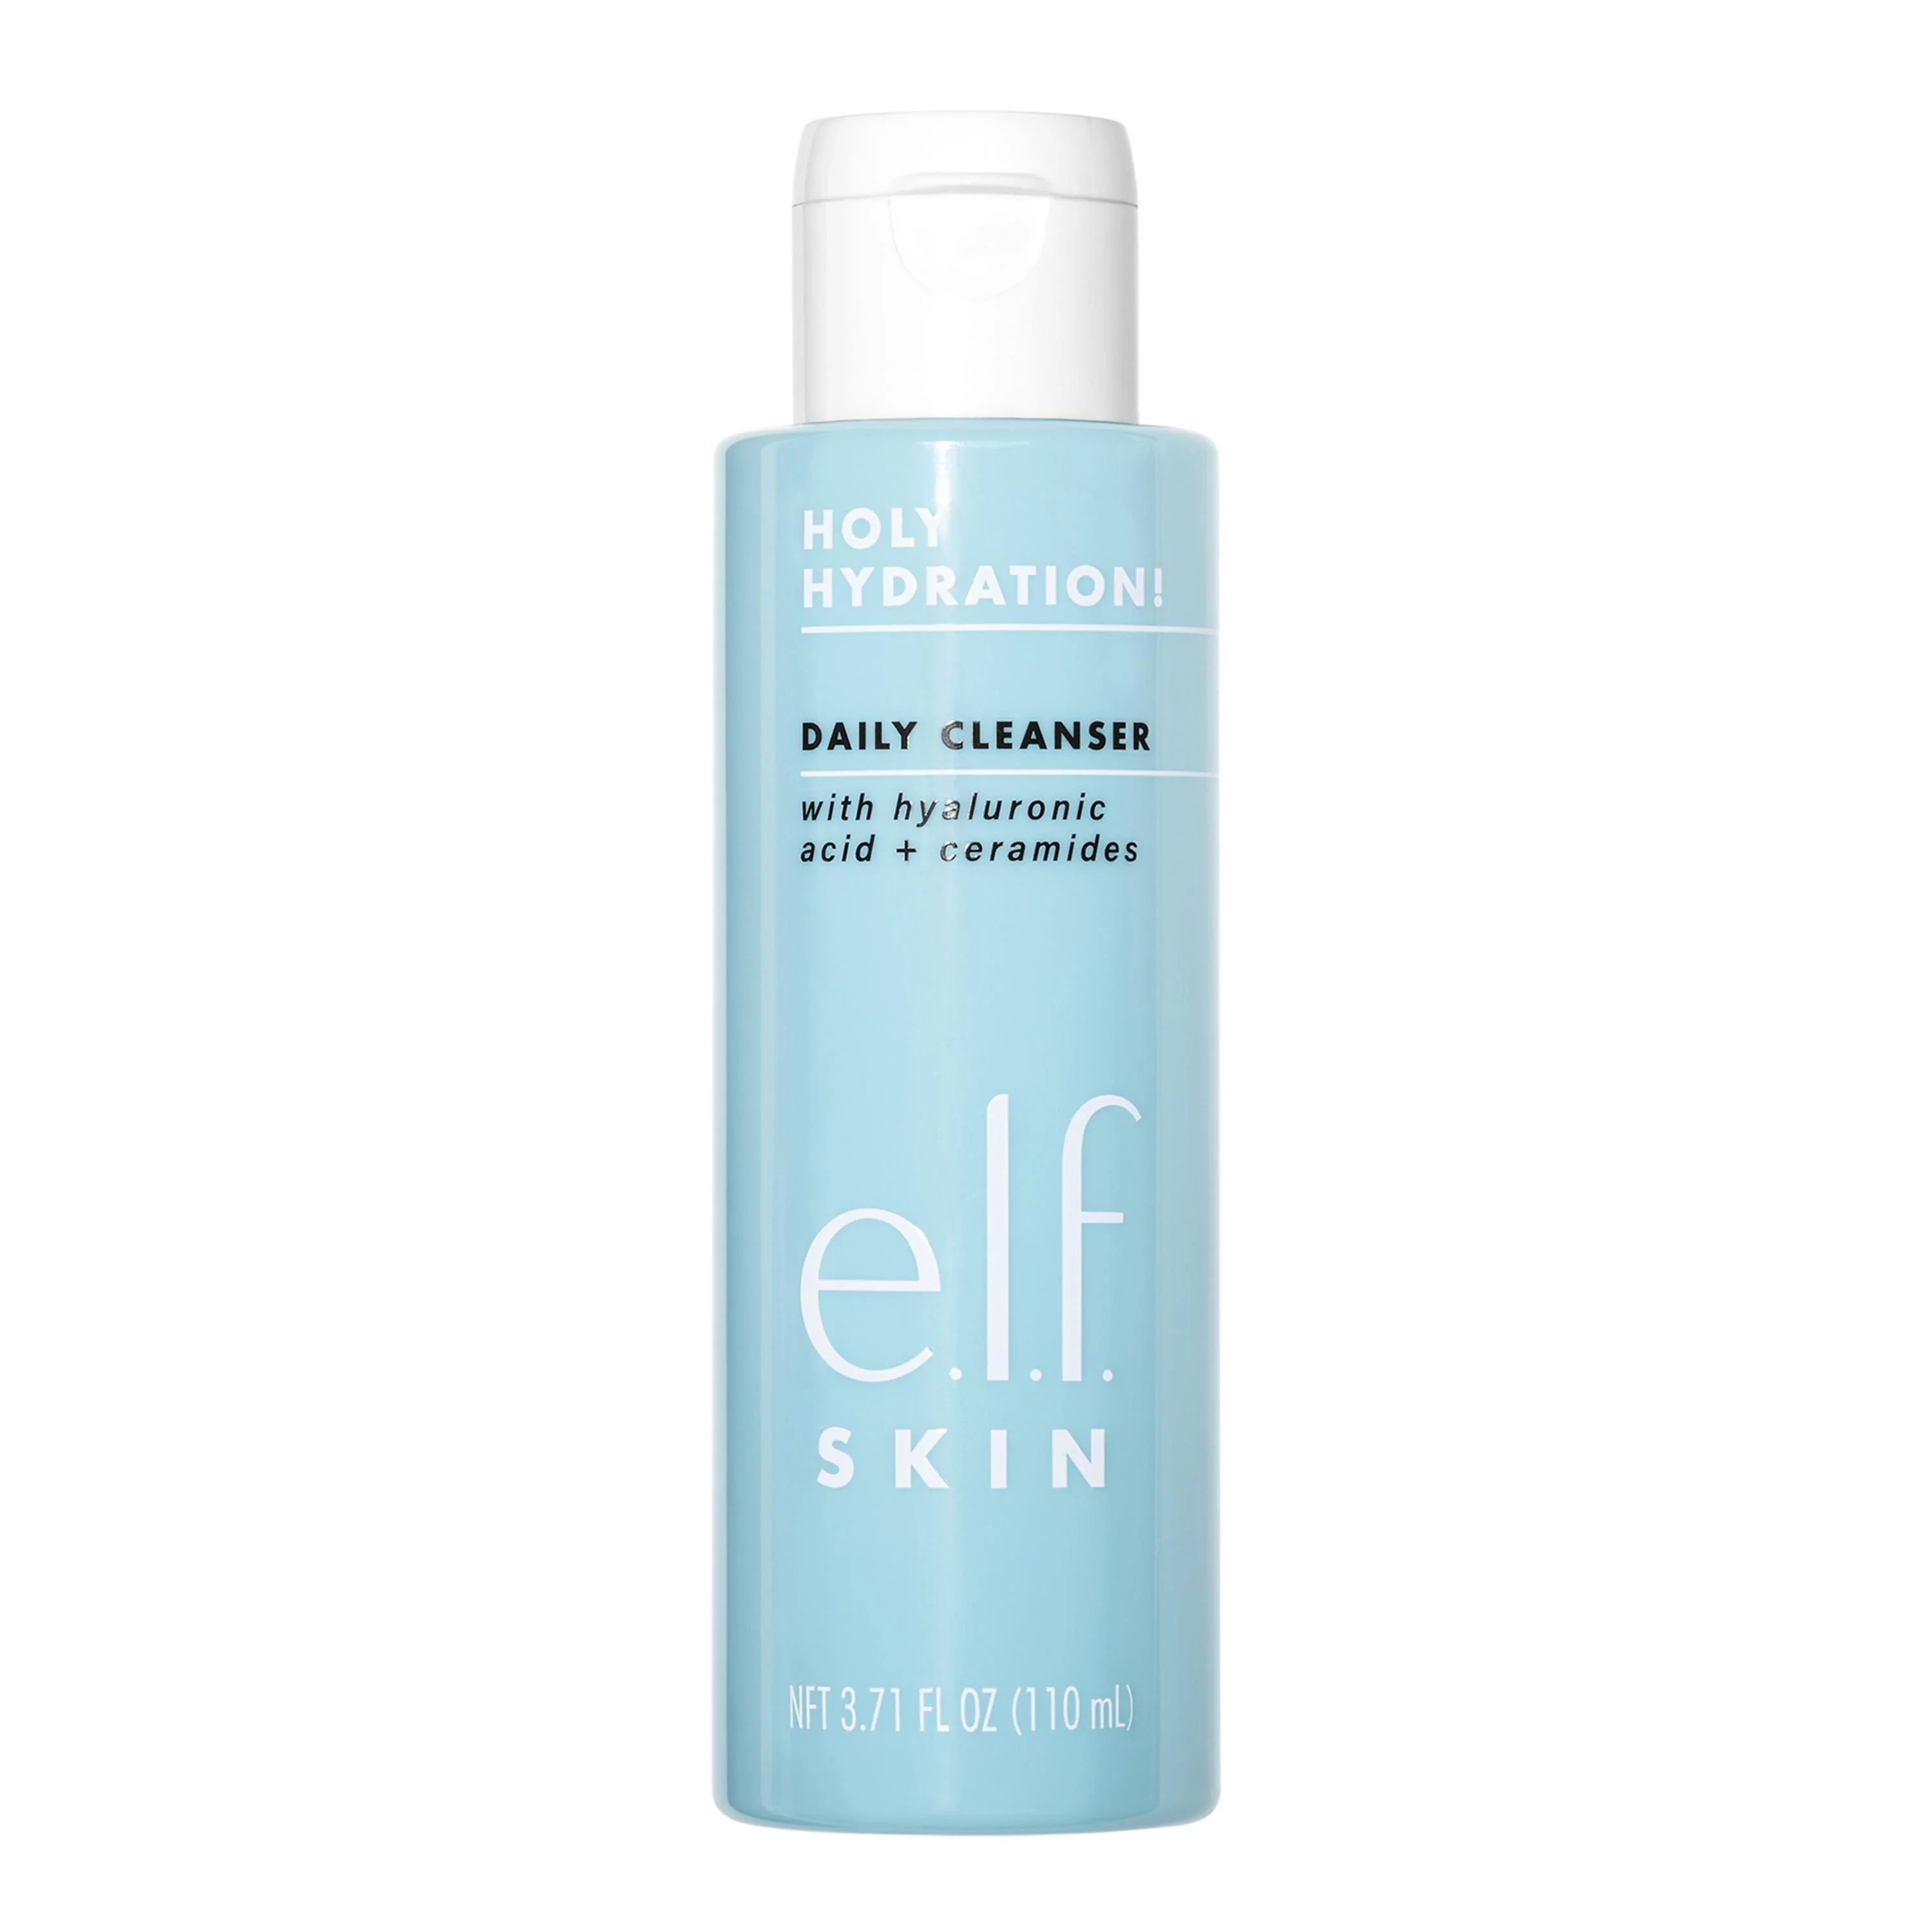 e.l.f. Cosmeticse.l.f. SKIN Holy Hydration! Daily CleanserUSDNow $6.00was $10.20$10.20$1.62/fl oz... | Walmart (US)